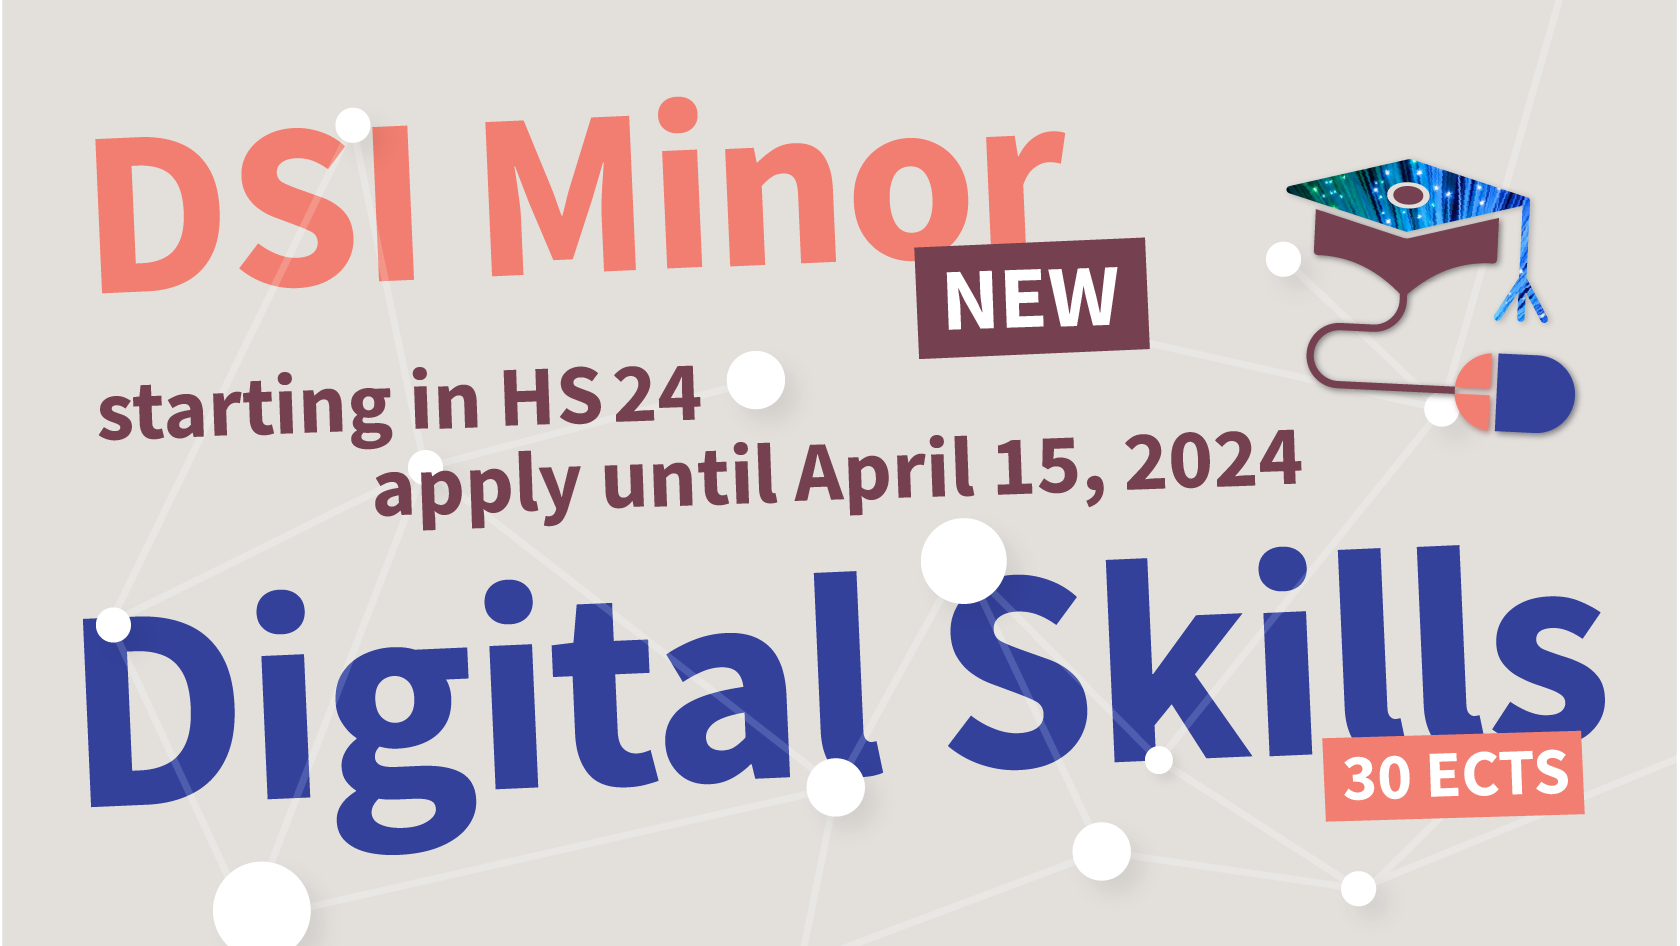 DSI Minor Digital Skills